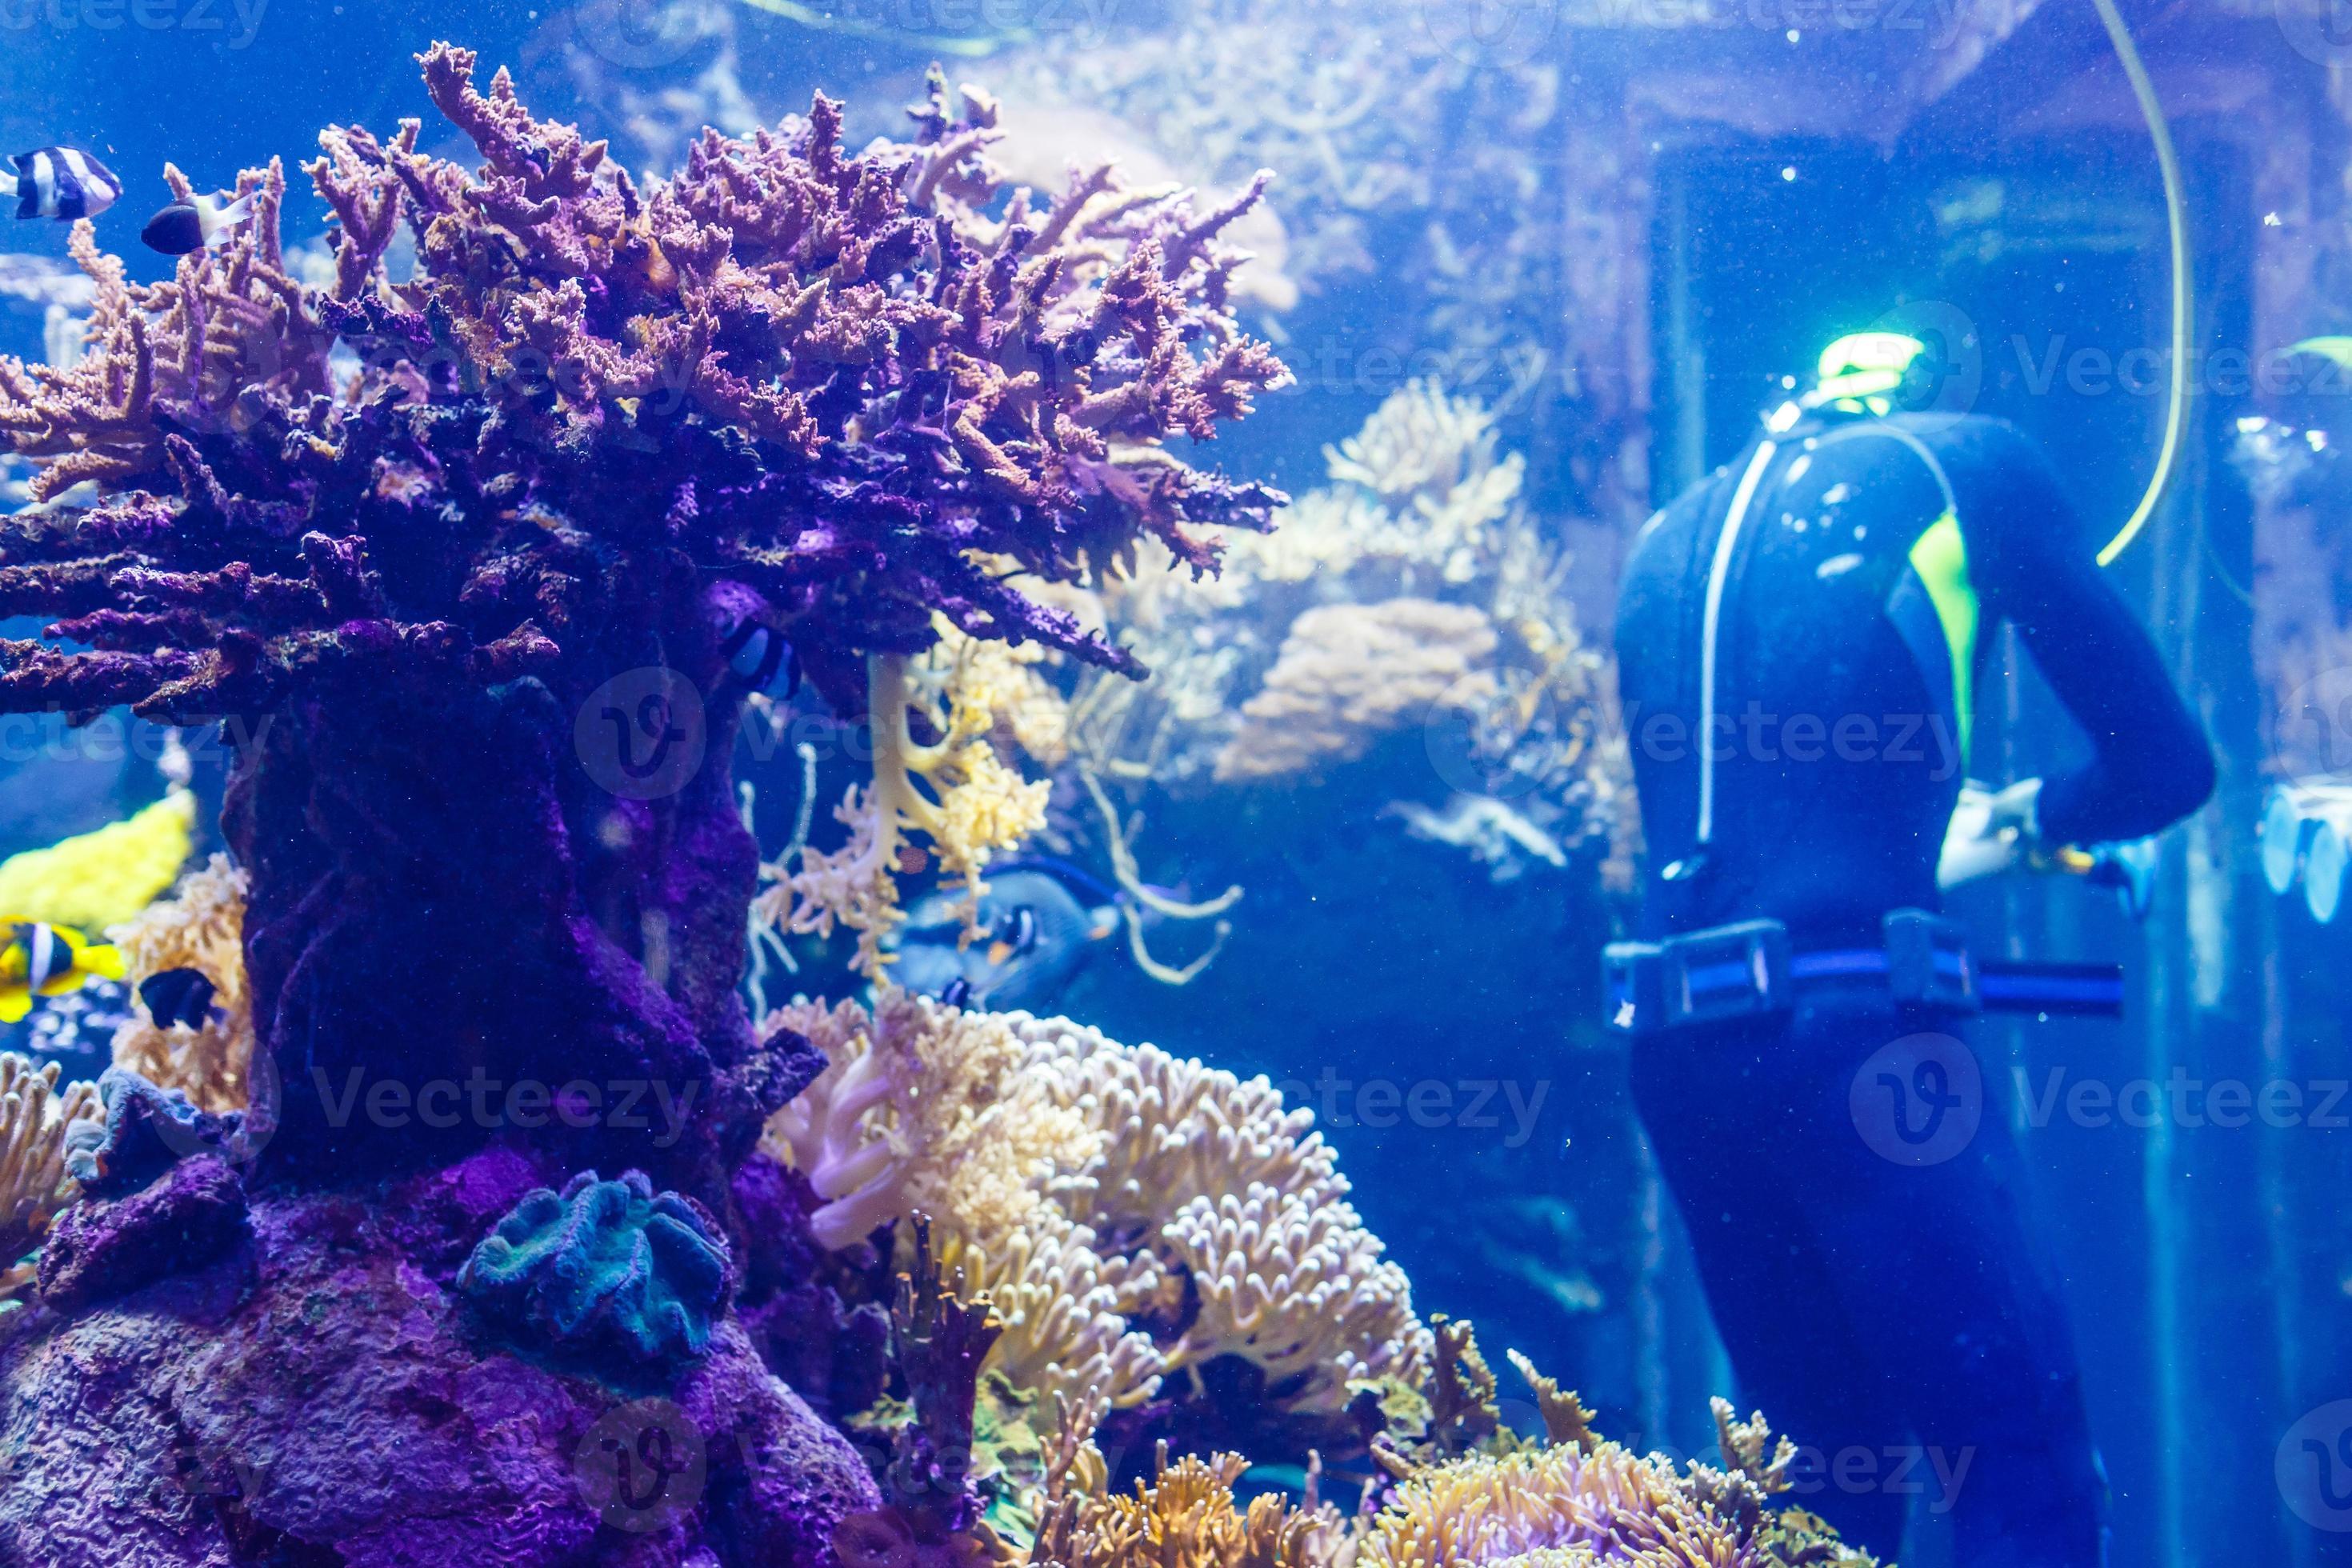 Cleaning a huge aquarium, aquarium cleaner 16781892 Stock Photo at Vecteezy